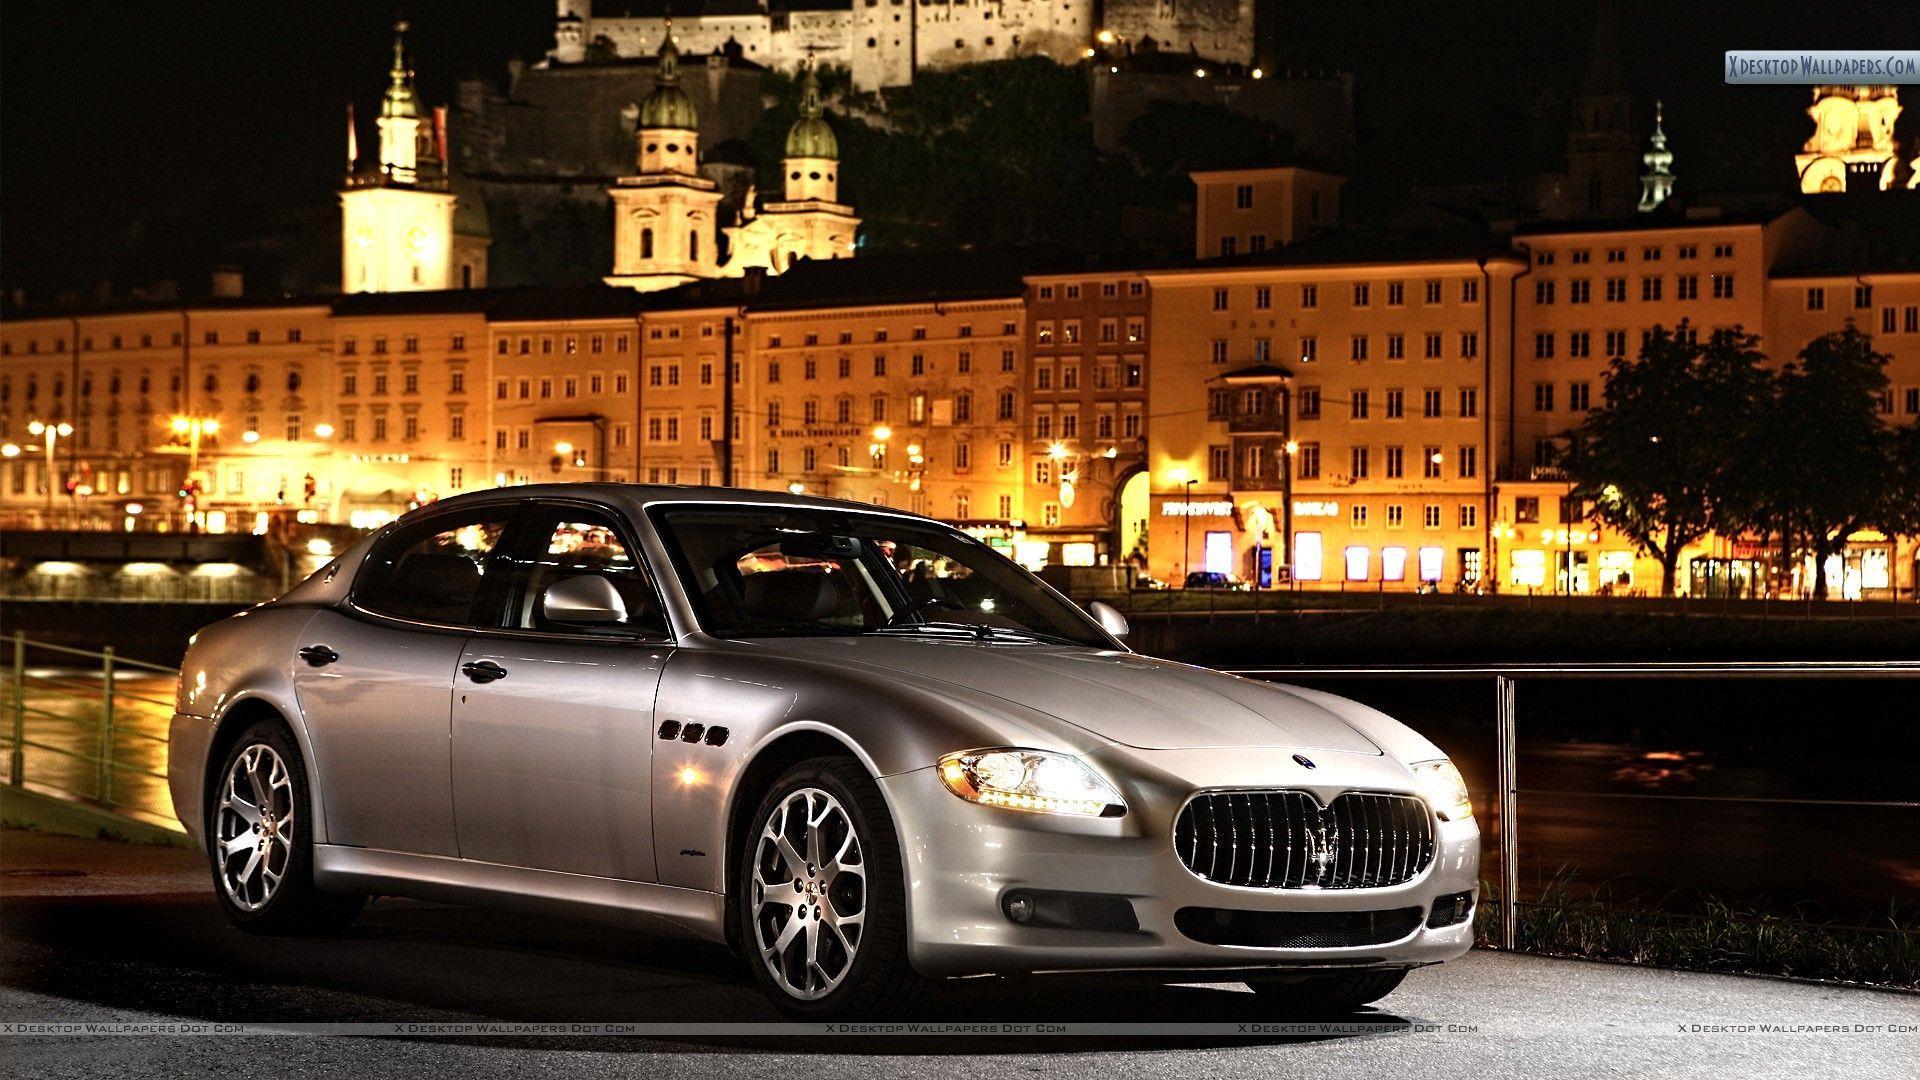 Maserati Quattroporte Wallpaper, Photo & Image in HD